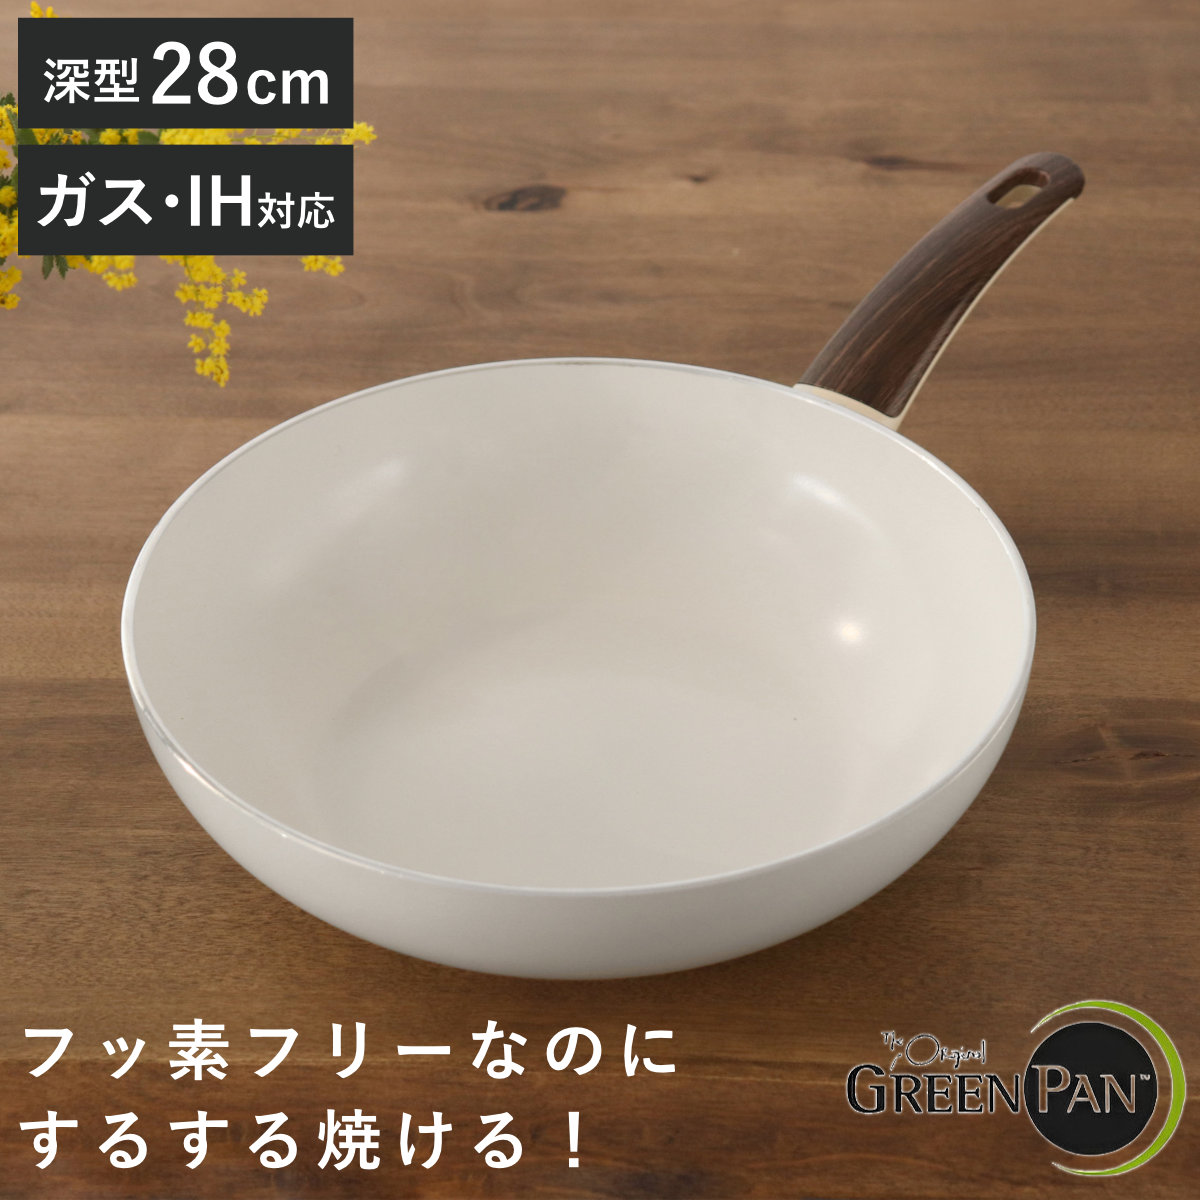 GREEN PAN グリーンパン ウォックパン 28cm WOOD-BE ウッドビー ダイヤモンド粒子配合 IH対応